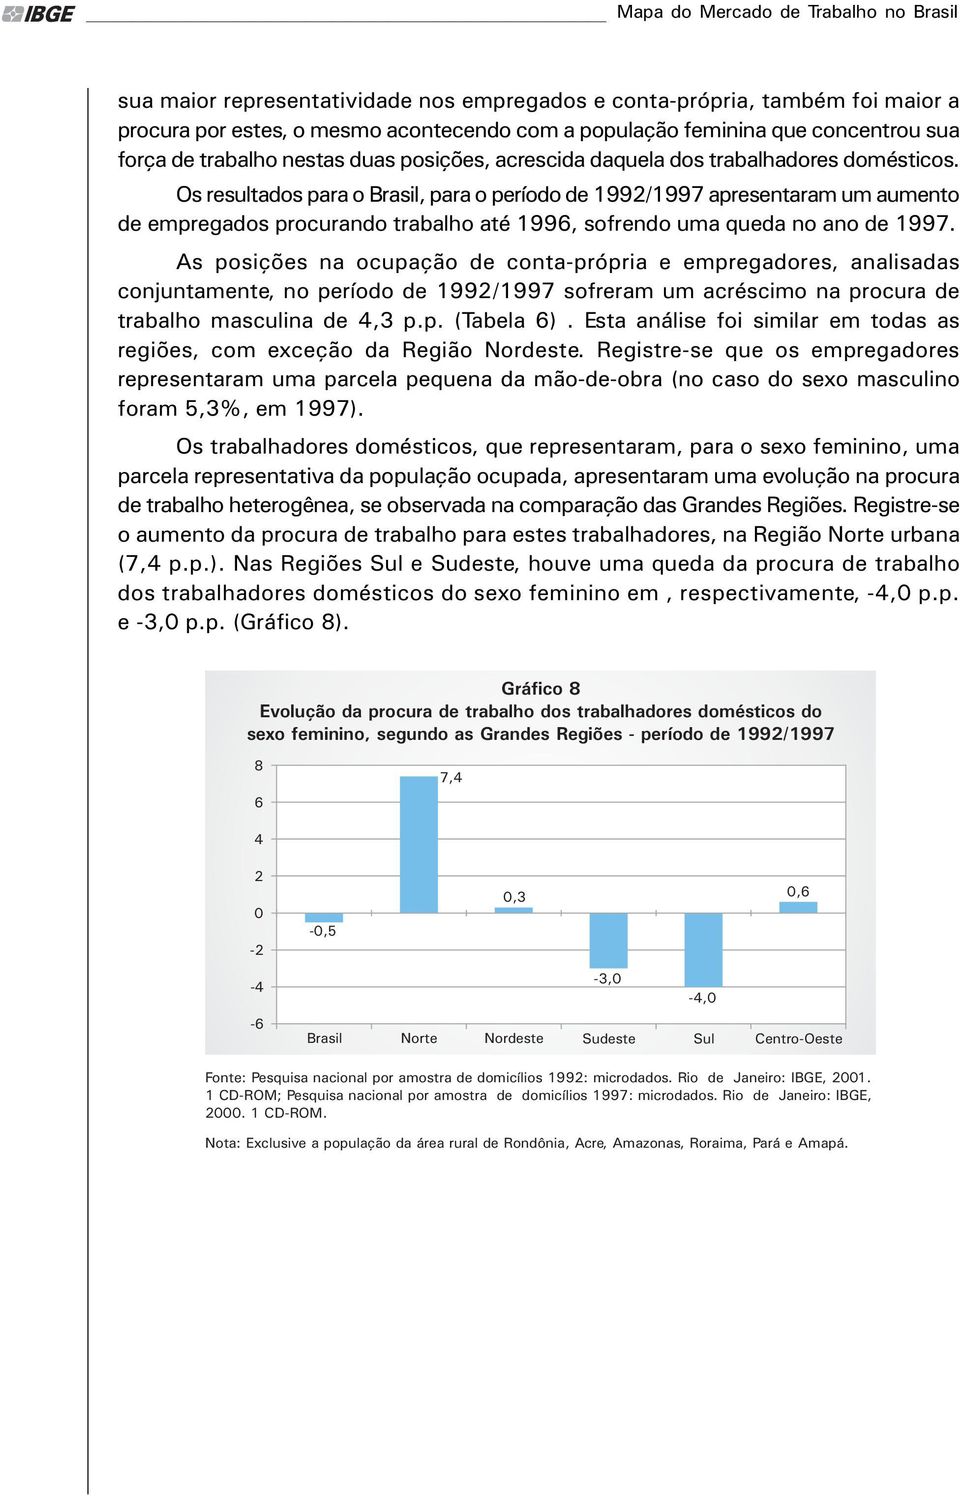 Os resultados para o Brasil, para o período de 1992/1997 apresentaram um aumento de empregados procurando trabalho até 1996, sofrendo uma queda no ano de 1997.